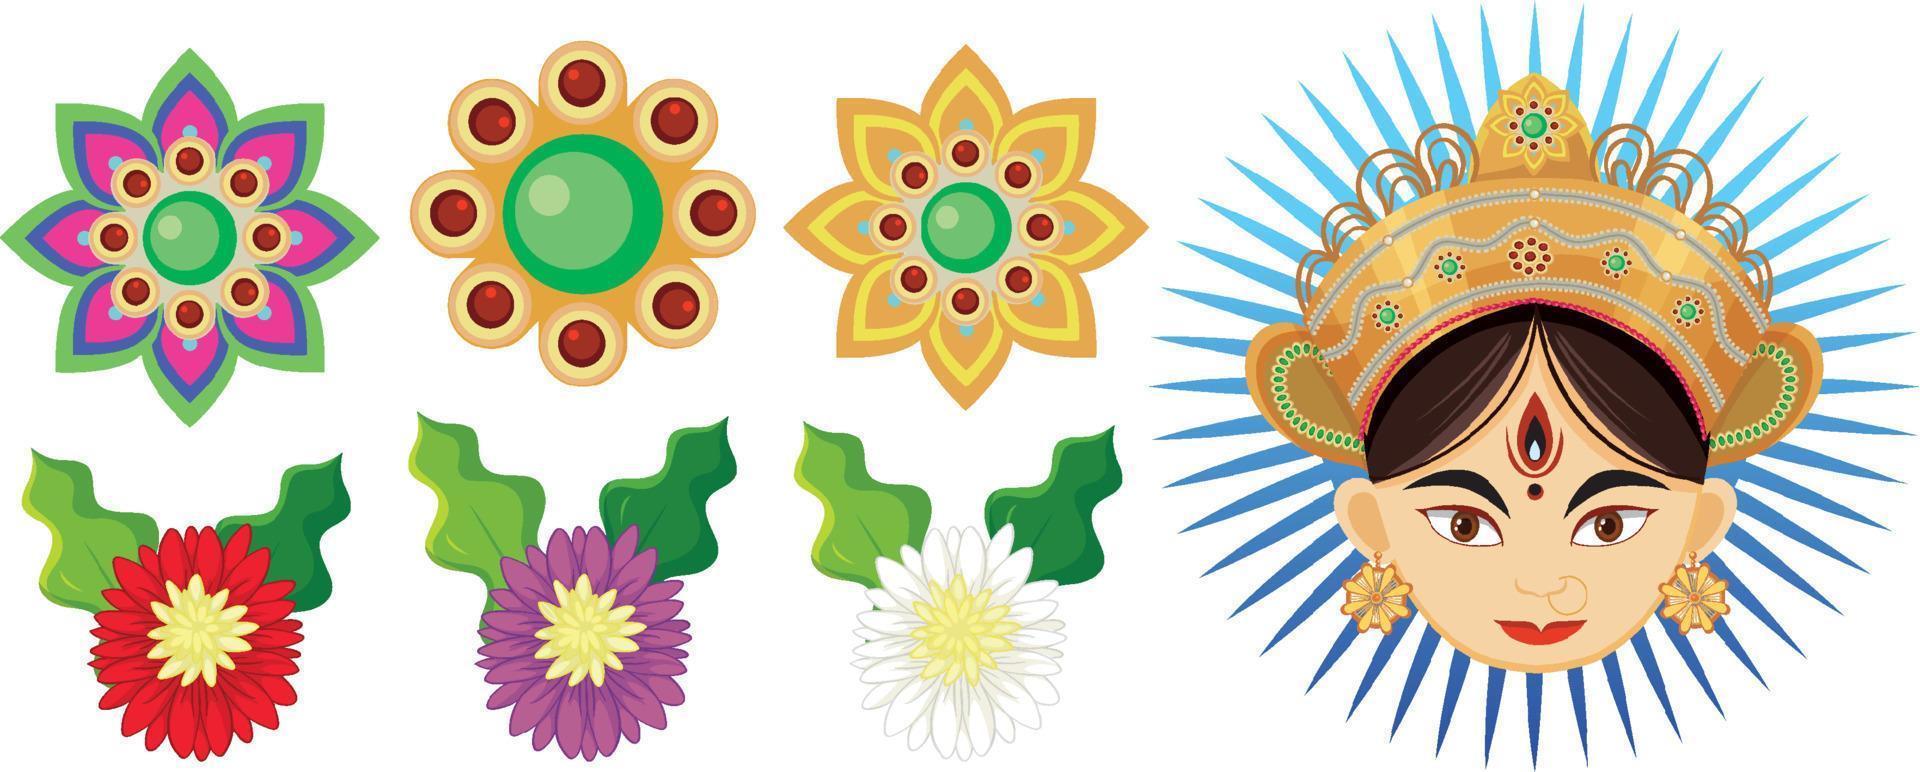 heilig voorwerp en decoratie voor indisch festival vector